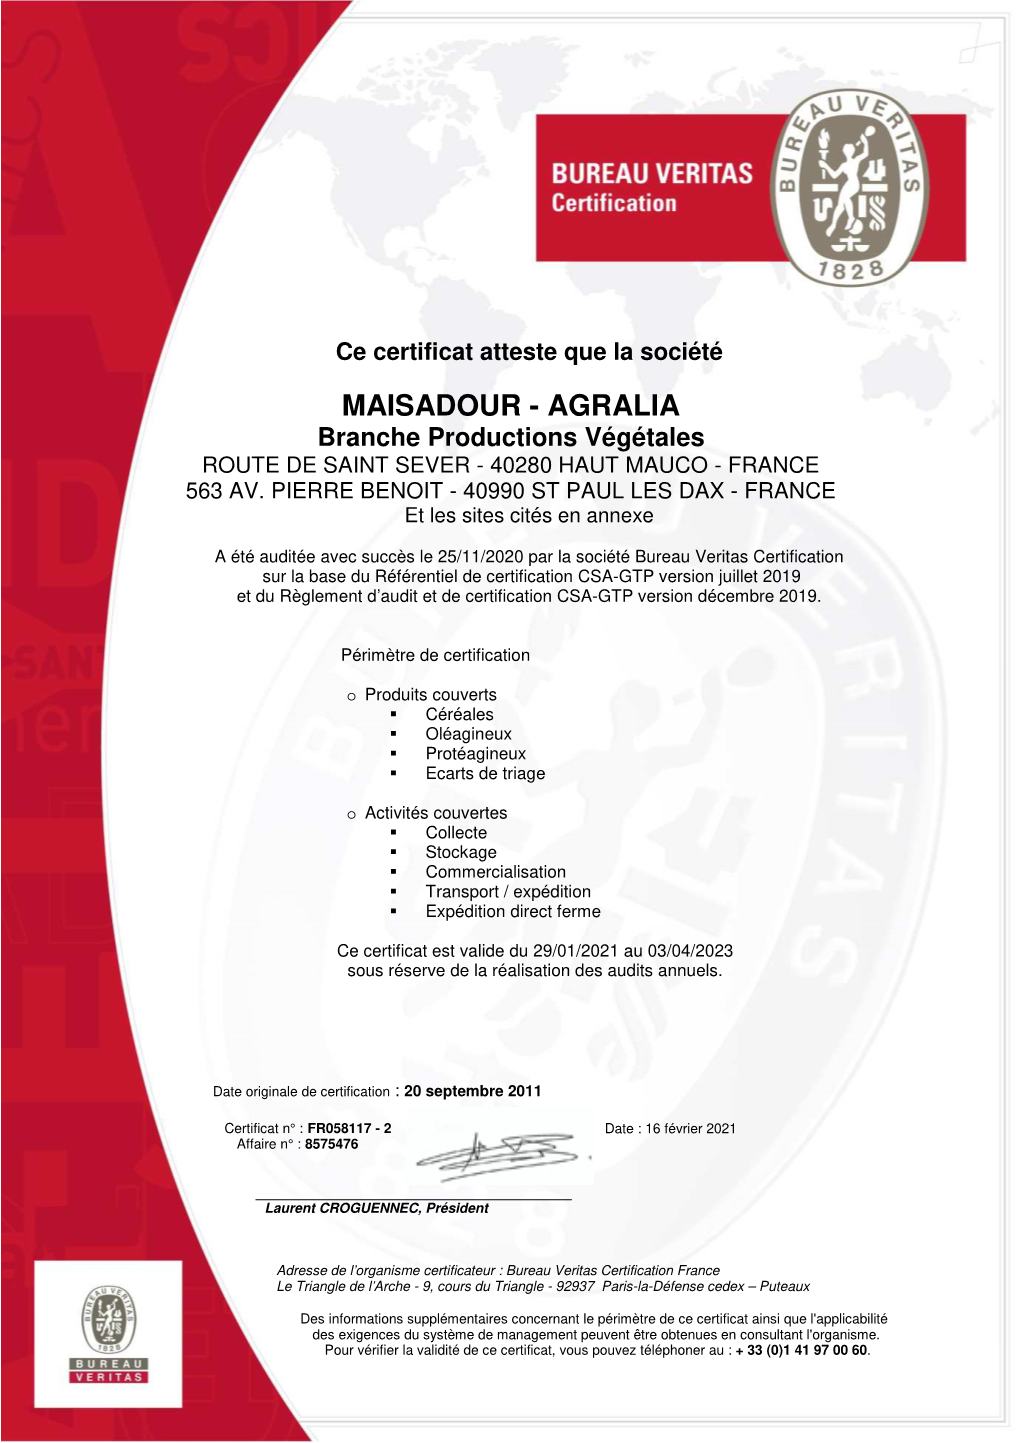 MAISADOUR - AGRALIA Branche Productions Végétales ROUTE DE SAINT SEVER - 40280 HAUT MAUCO - FRANCE 563 AV